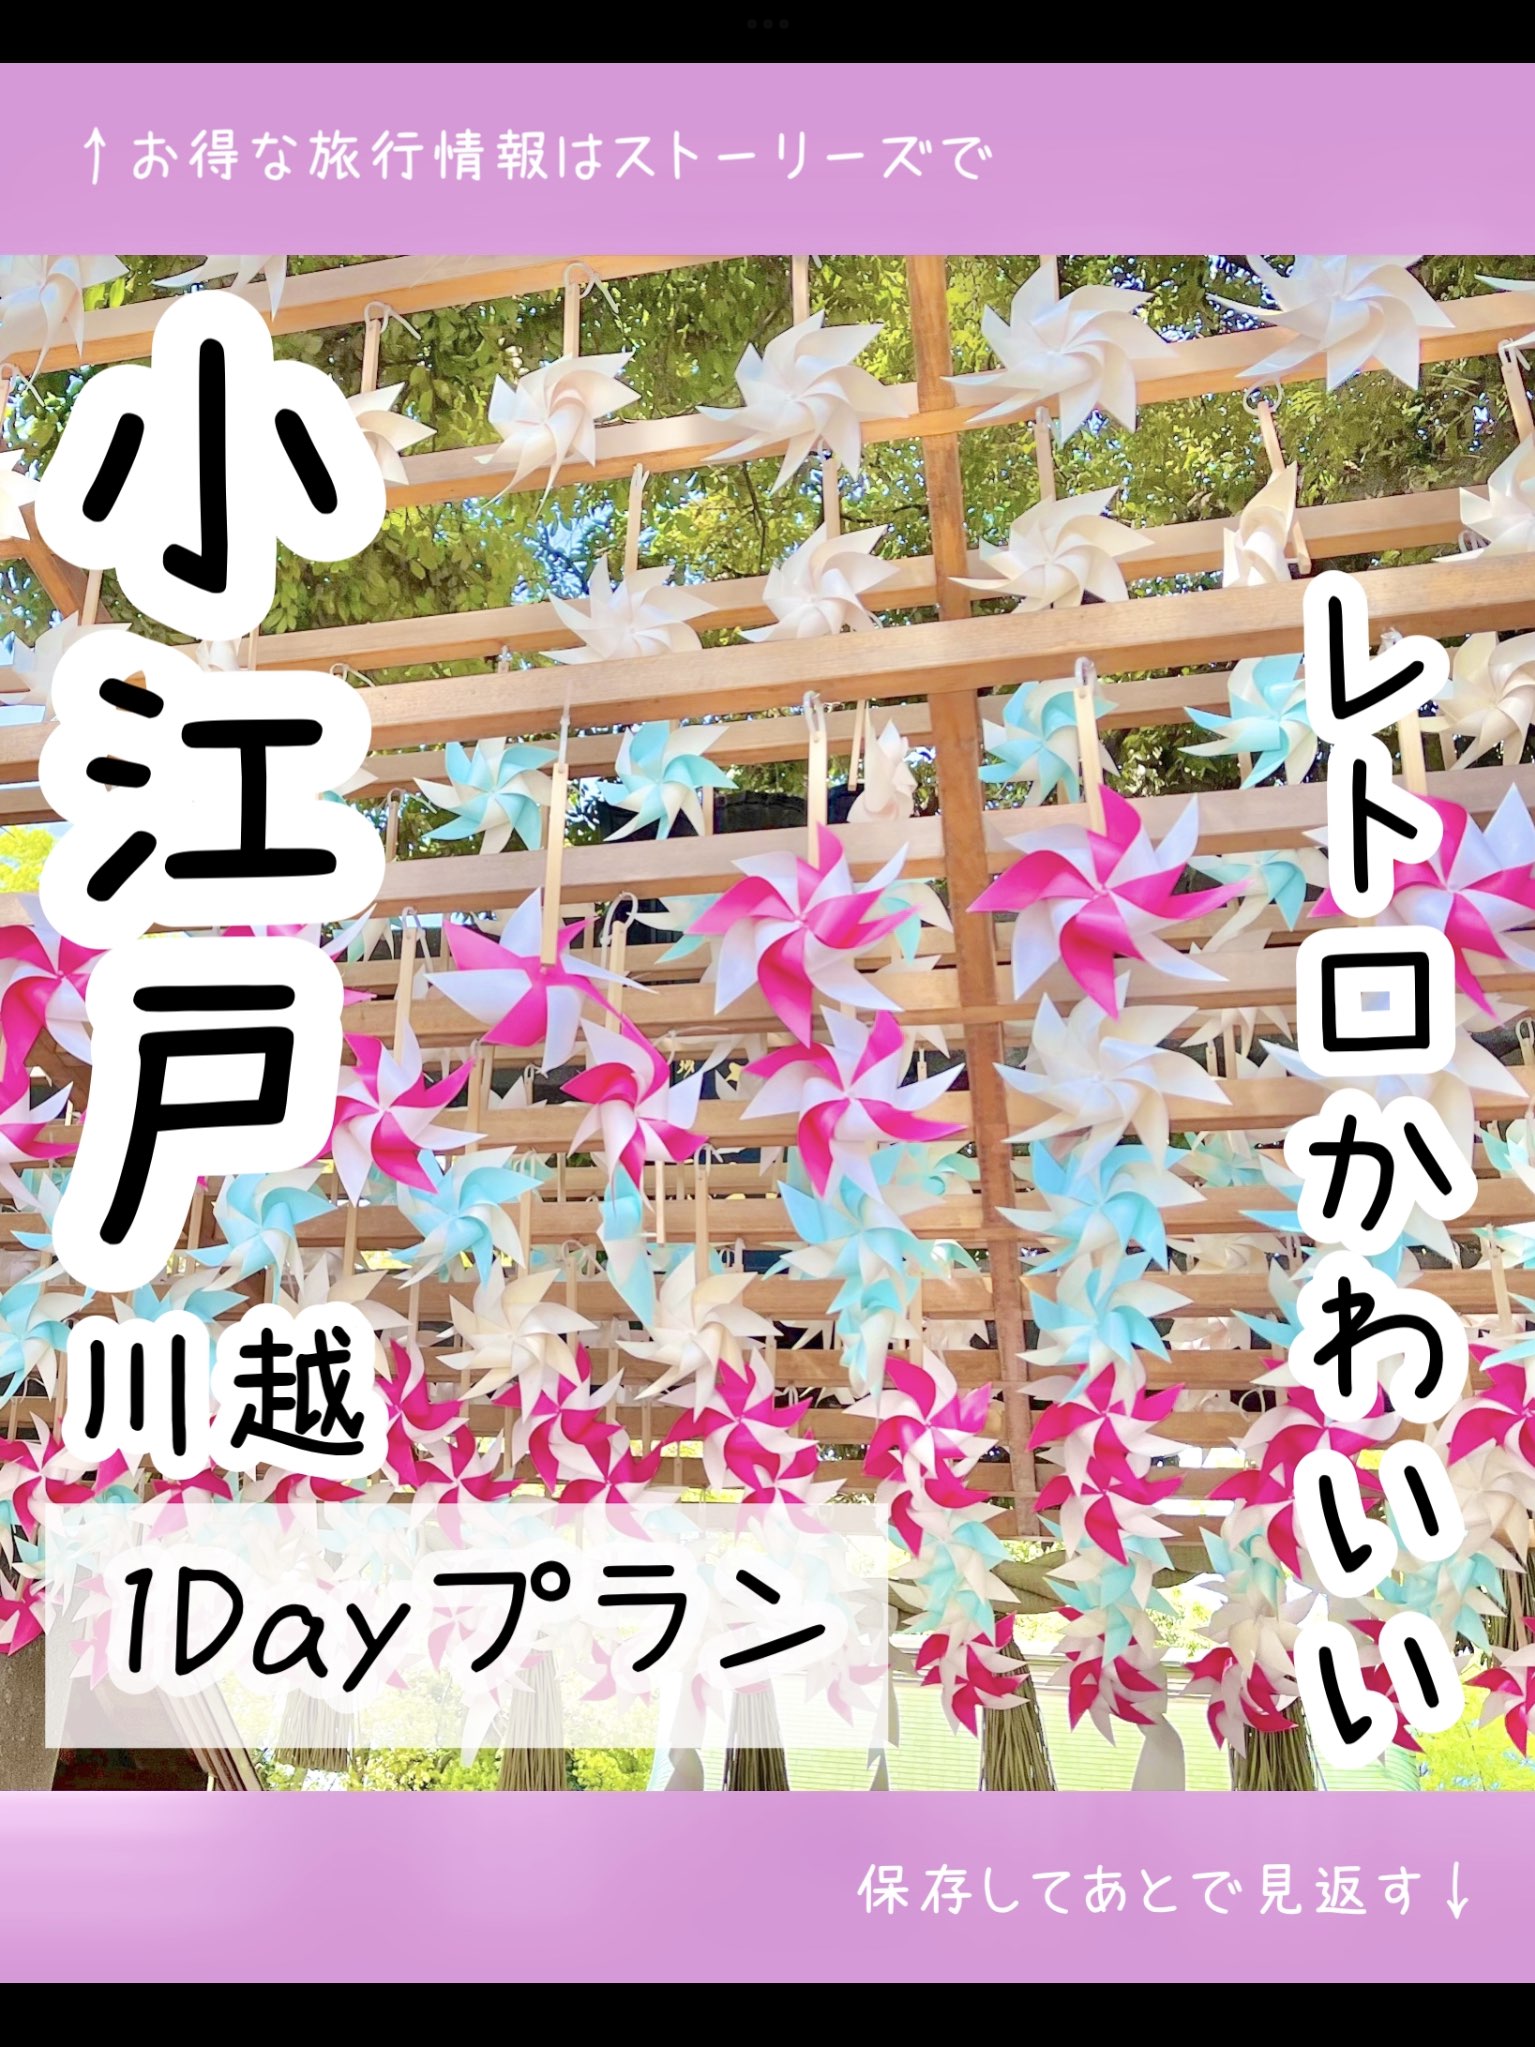 [埼玉]复古可爱♡小江户川越1Day计划